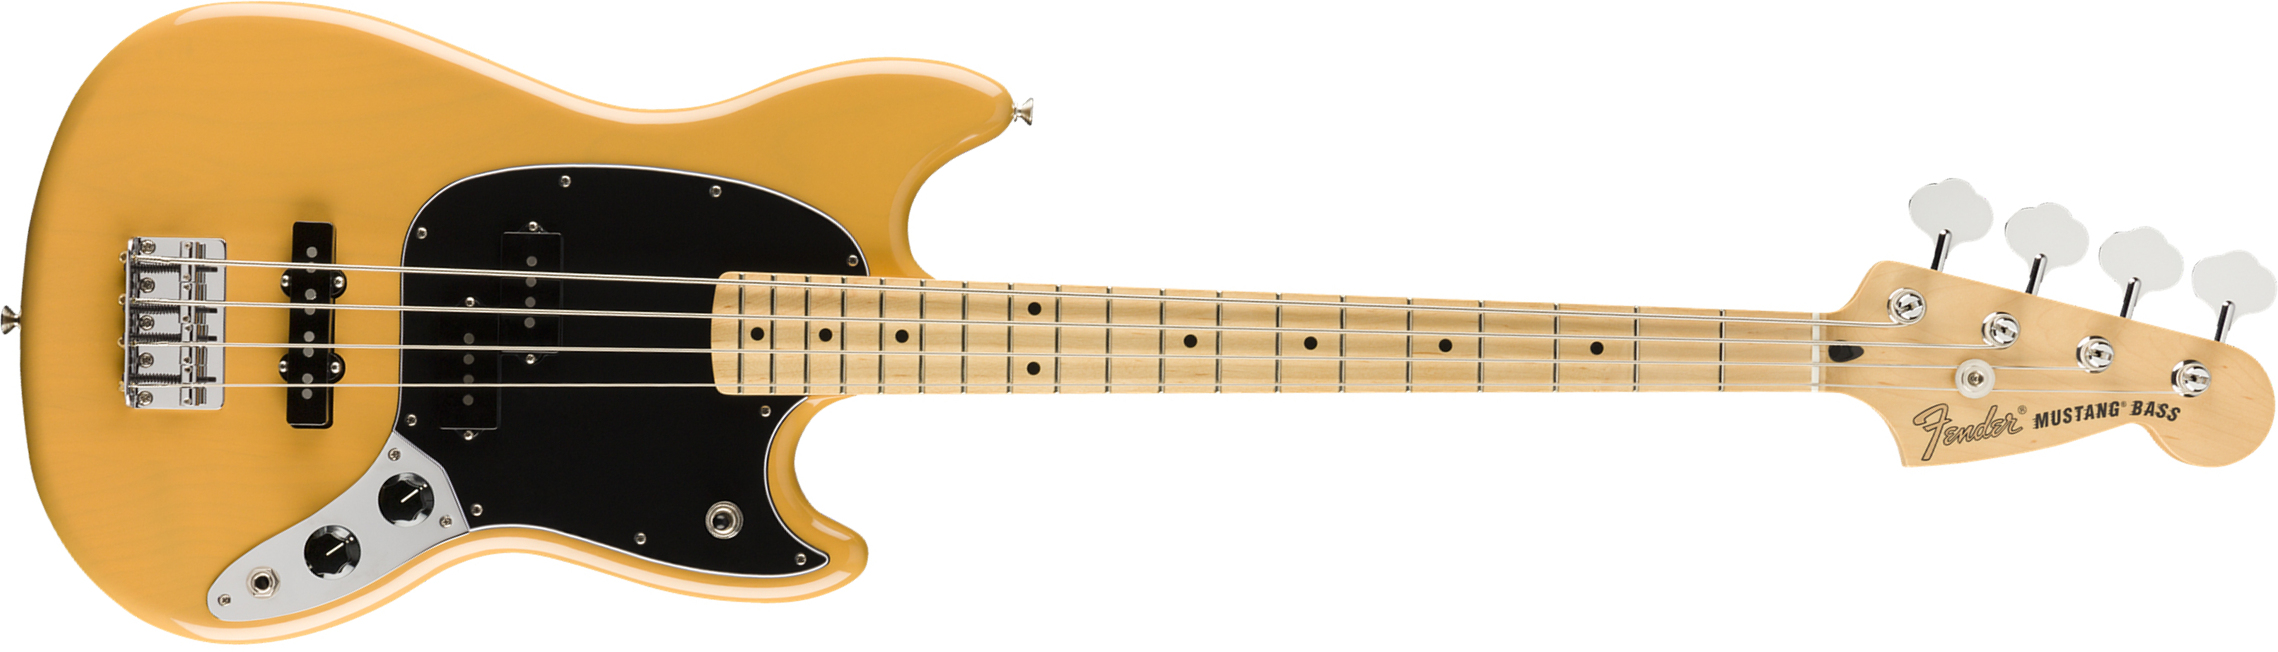 Fender Mustang Bass Pj Player Ltd Mex Mn - Butterscotch Blonde - E-Bass für Kinder - Main picture